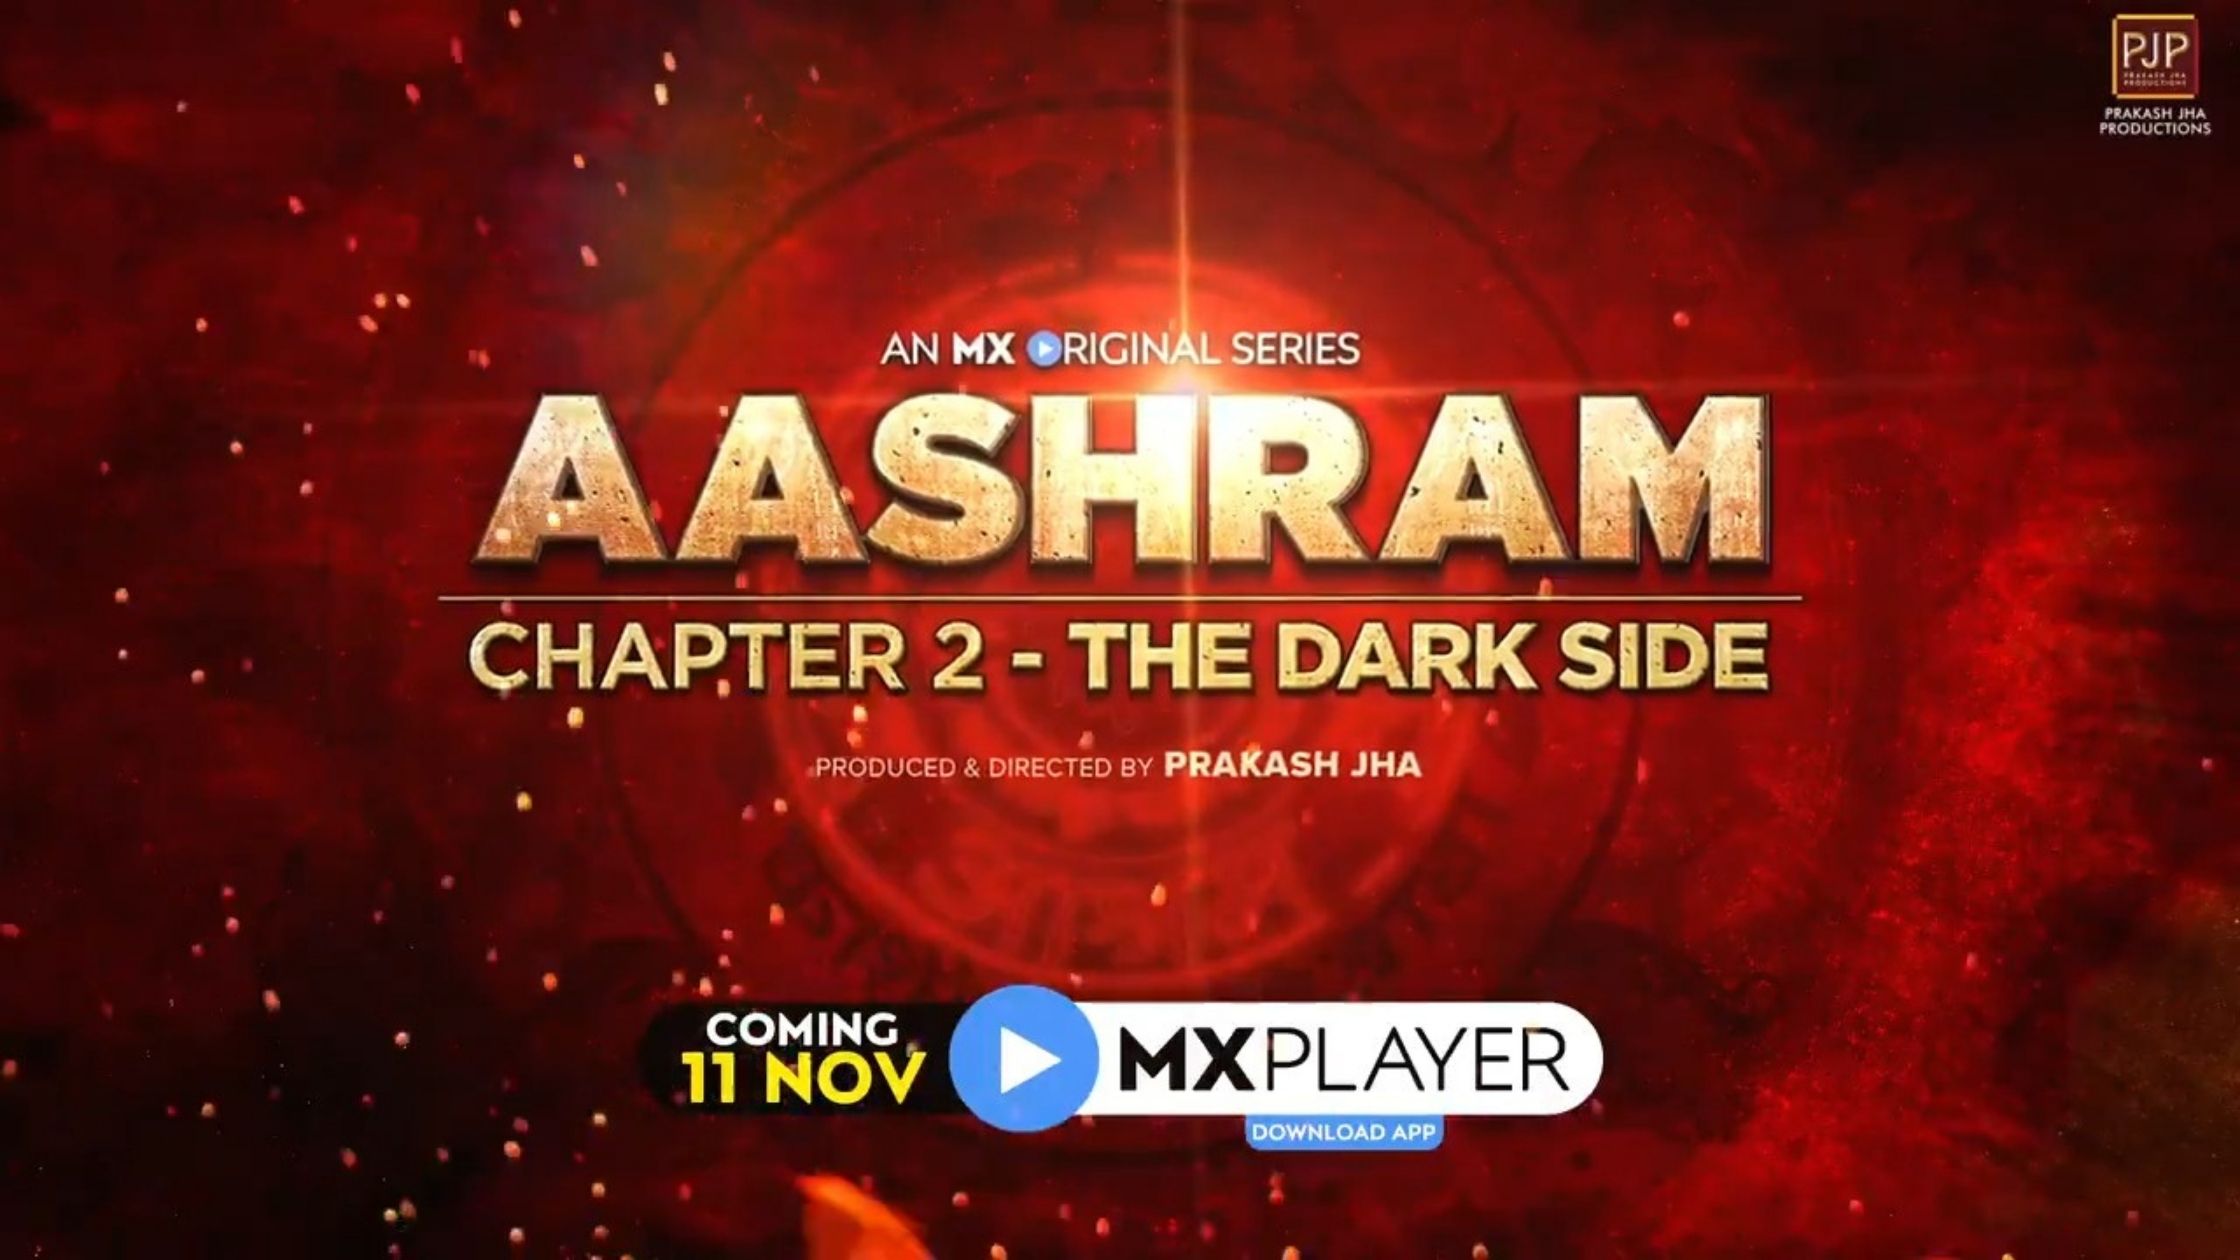 Aashram chapter 2